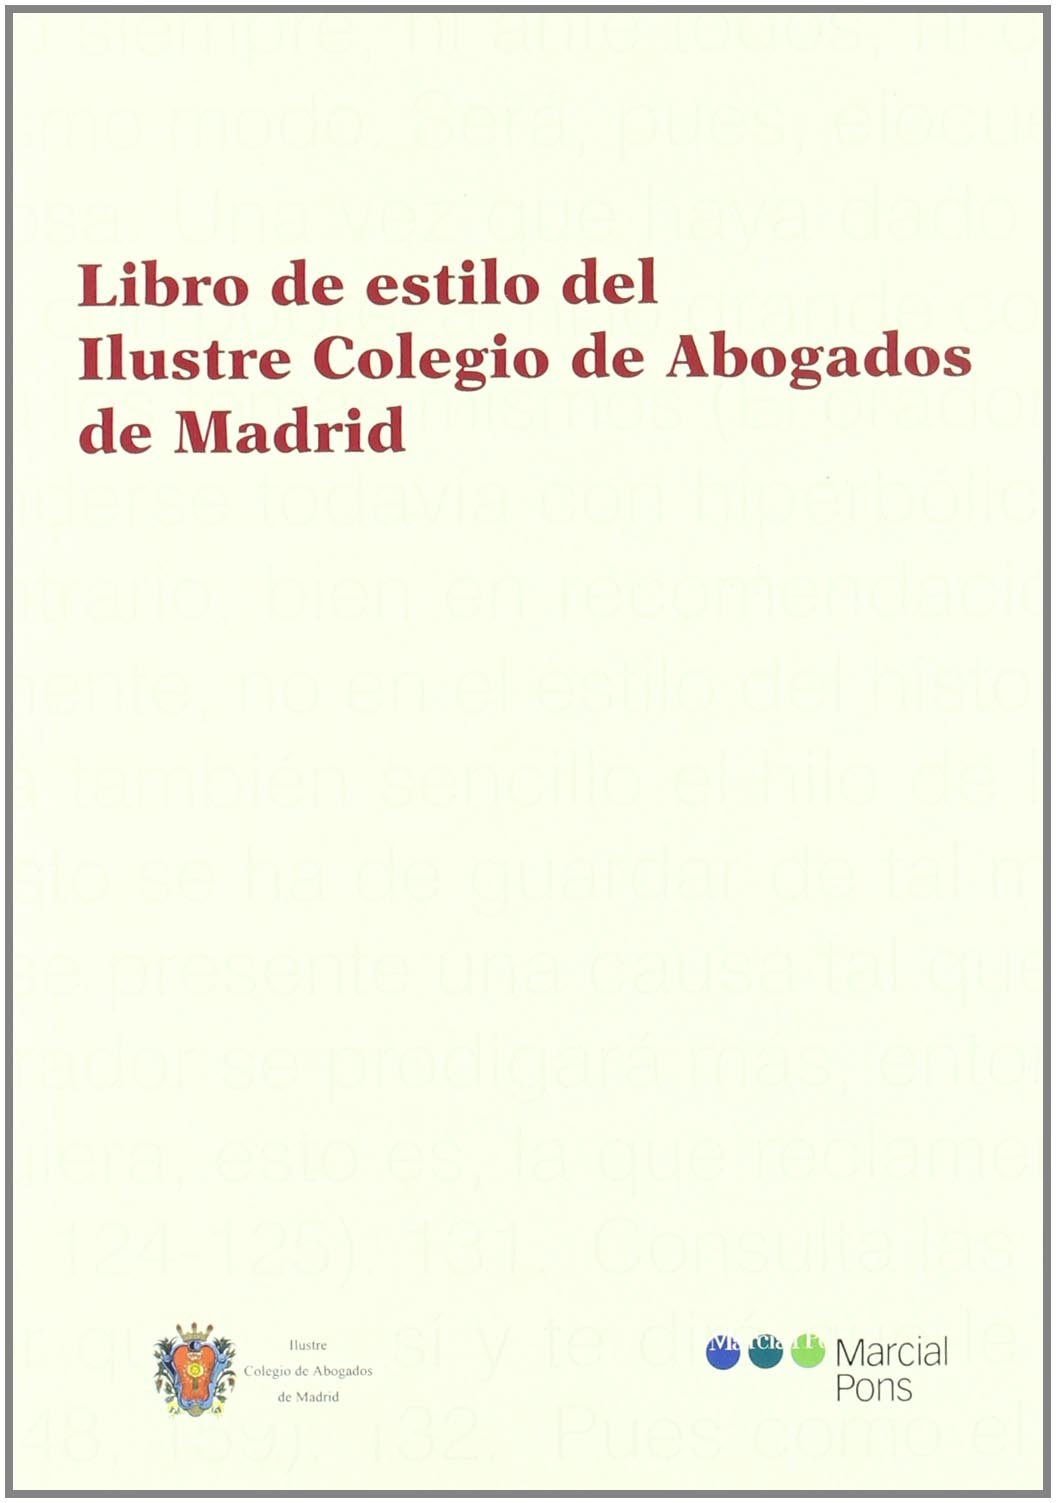 Libro de estilo del Ilustre Colegio de Abogados de Madrid